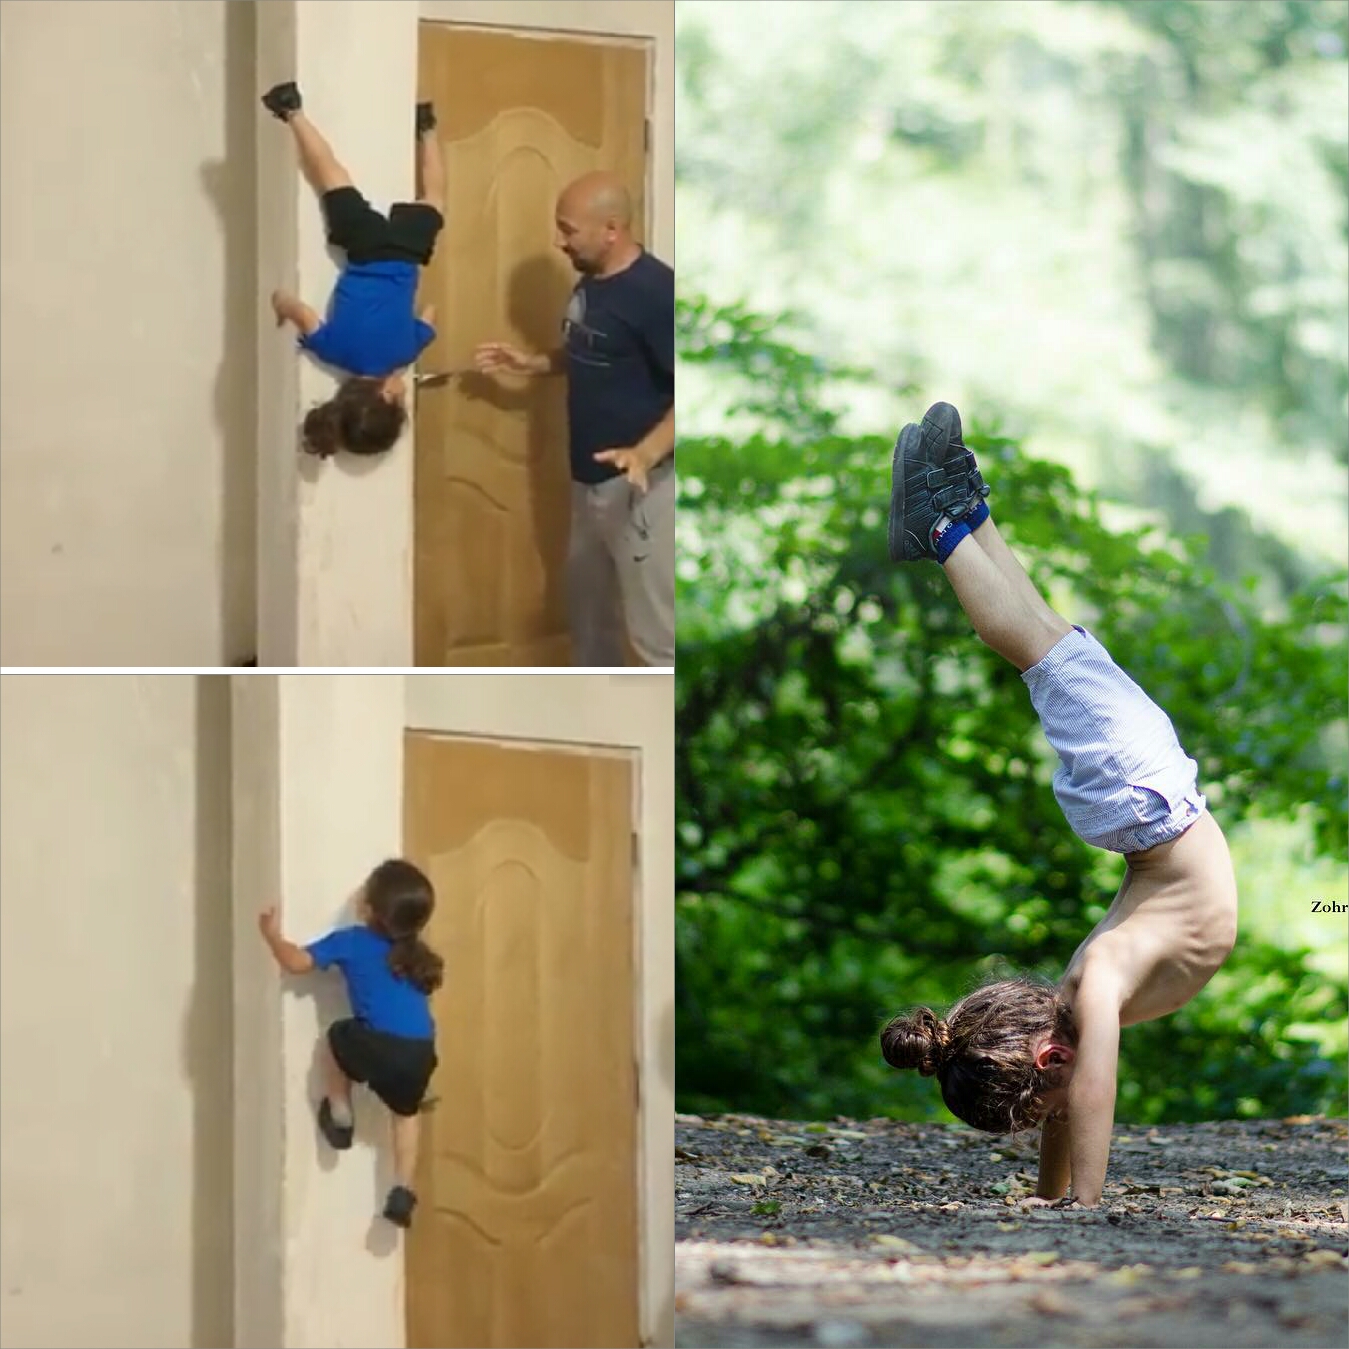 Bocah 9 tahun miliki skill 'Spiderman', naik-turun tembok tanpa alat